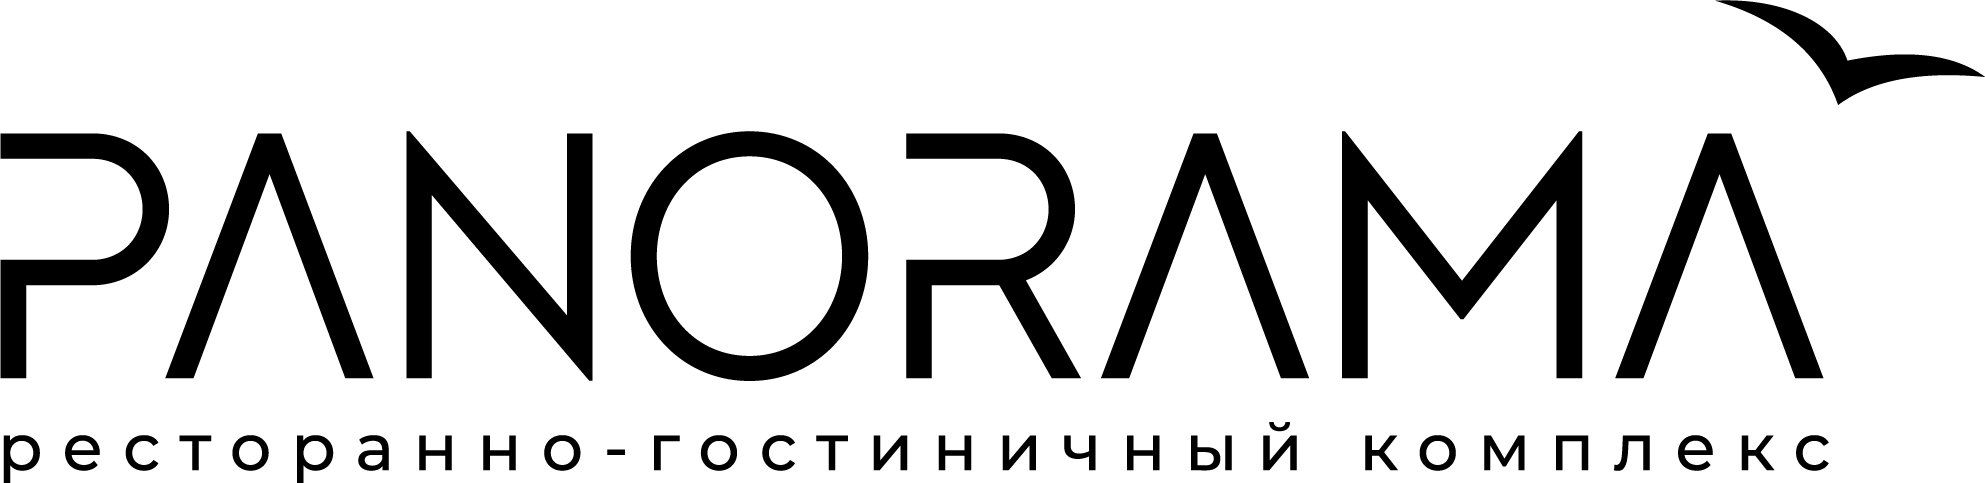 Логотип компании ООО Отель Панорама